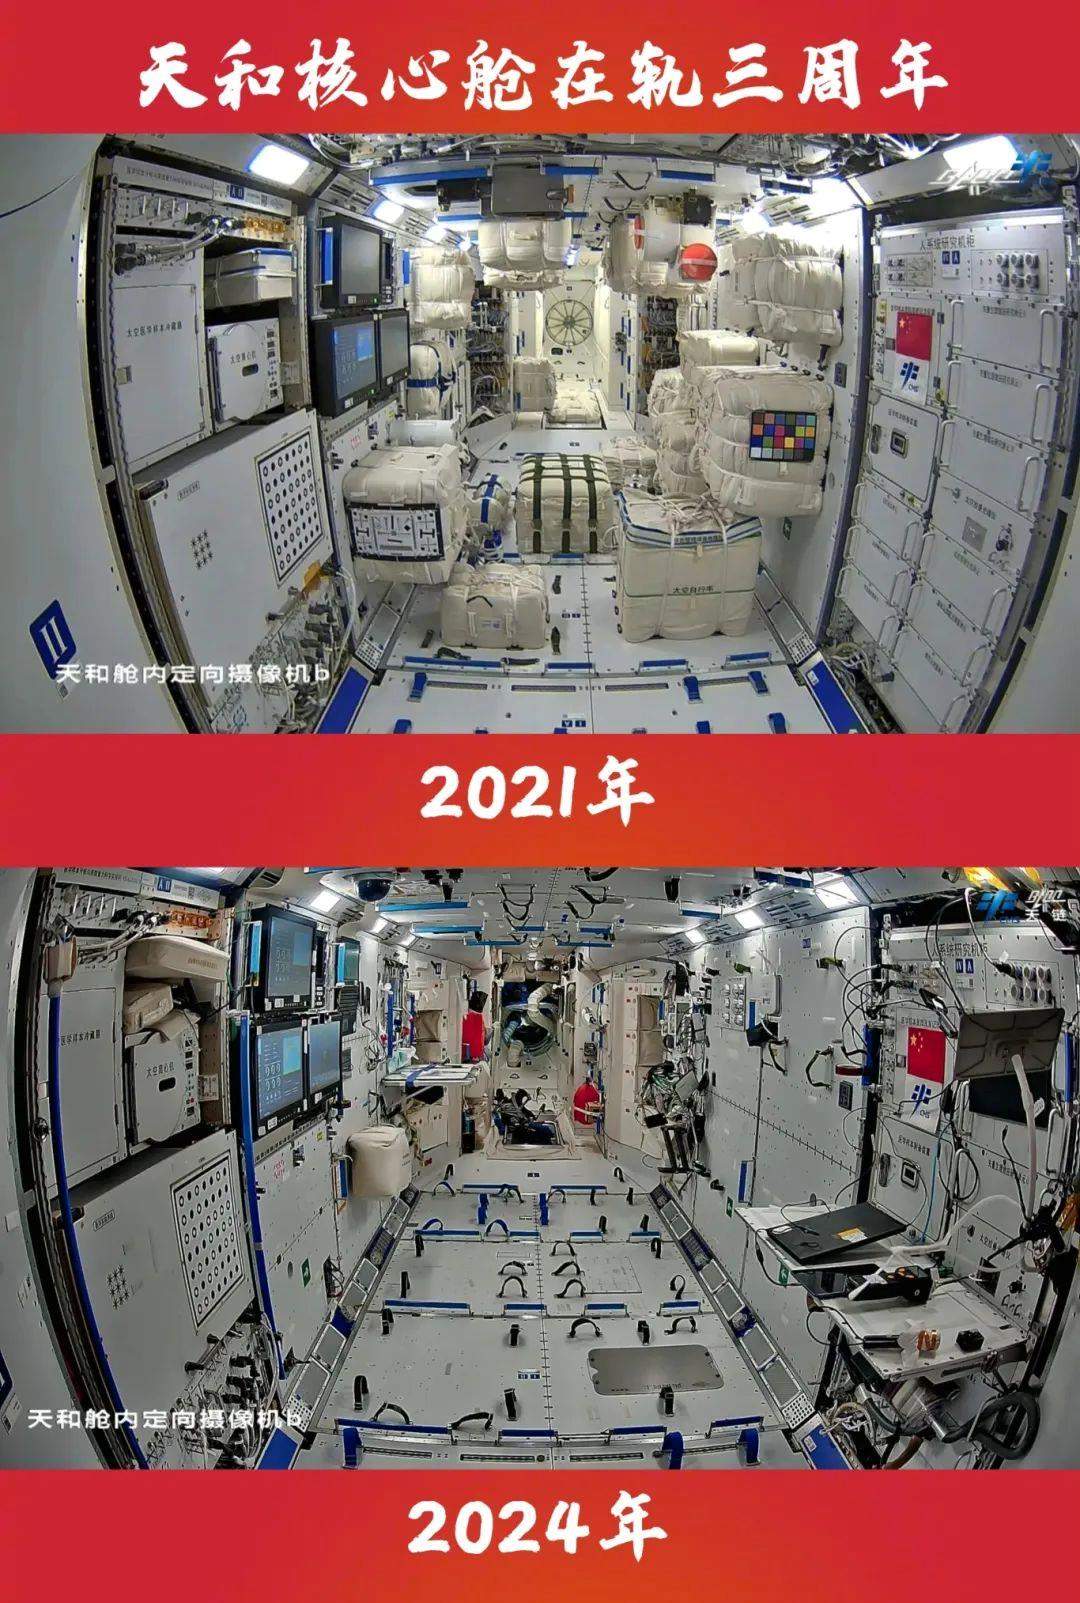 2021→2024 天和核心舱在轨三周年